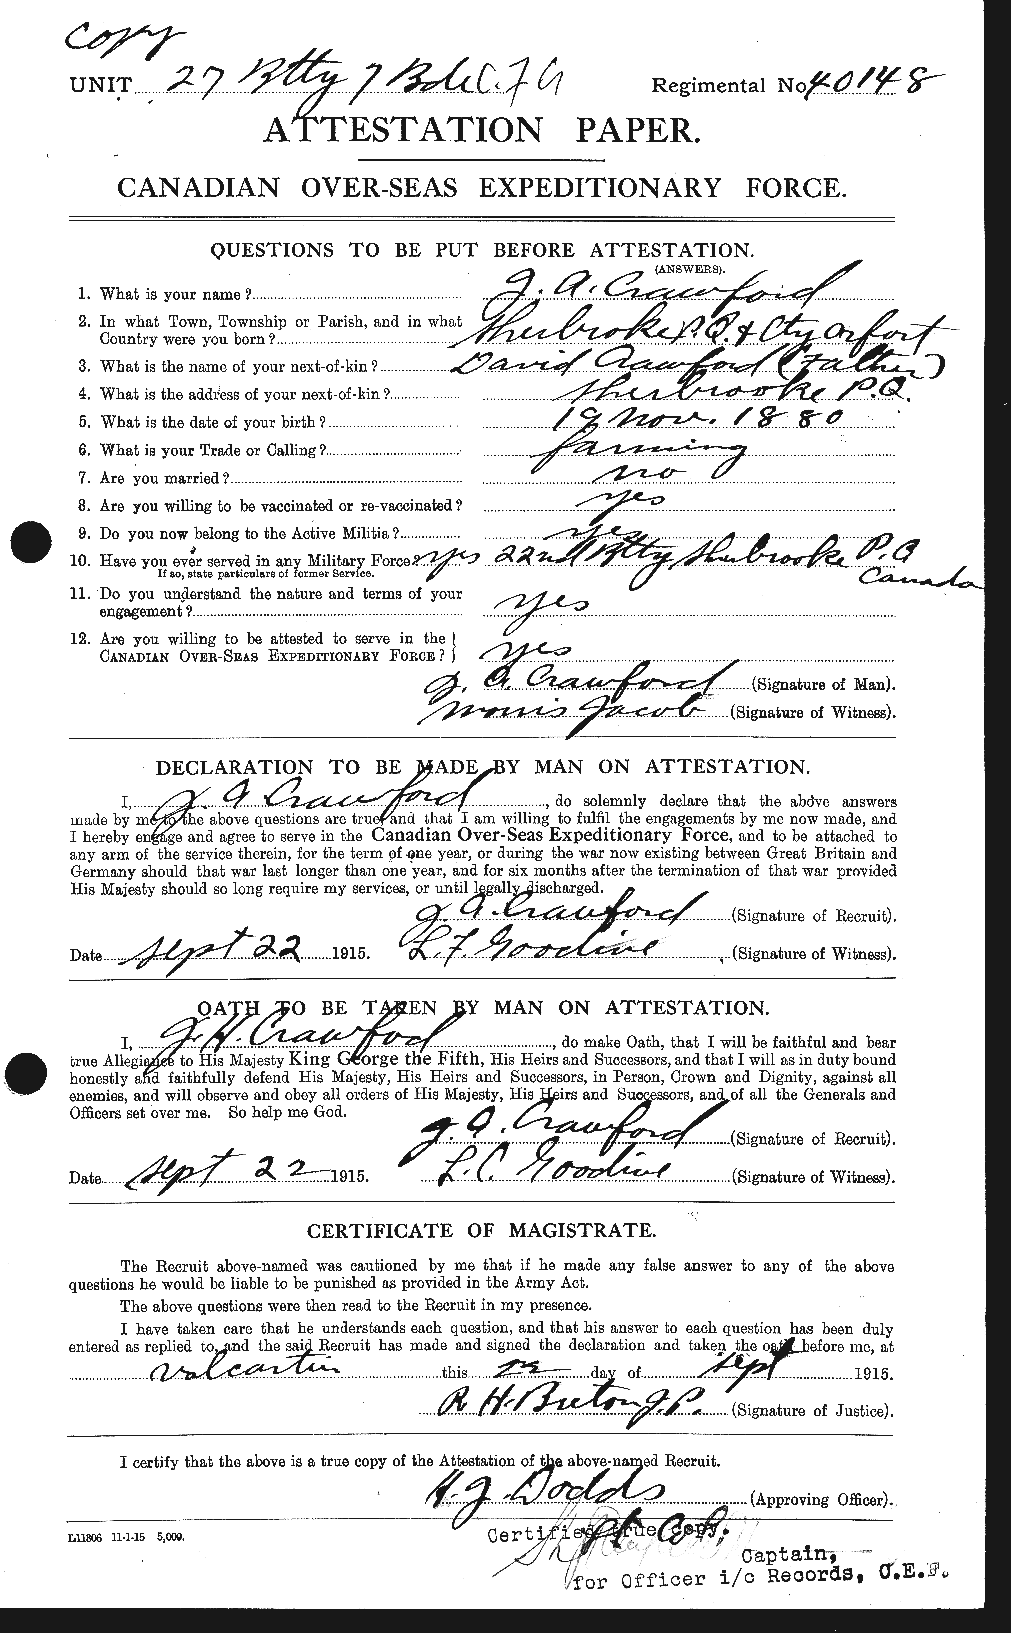 Dossiers du Personnel de la Première Guerre mondiale - CEC 060553a